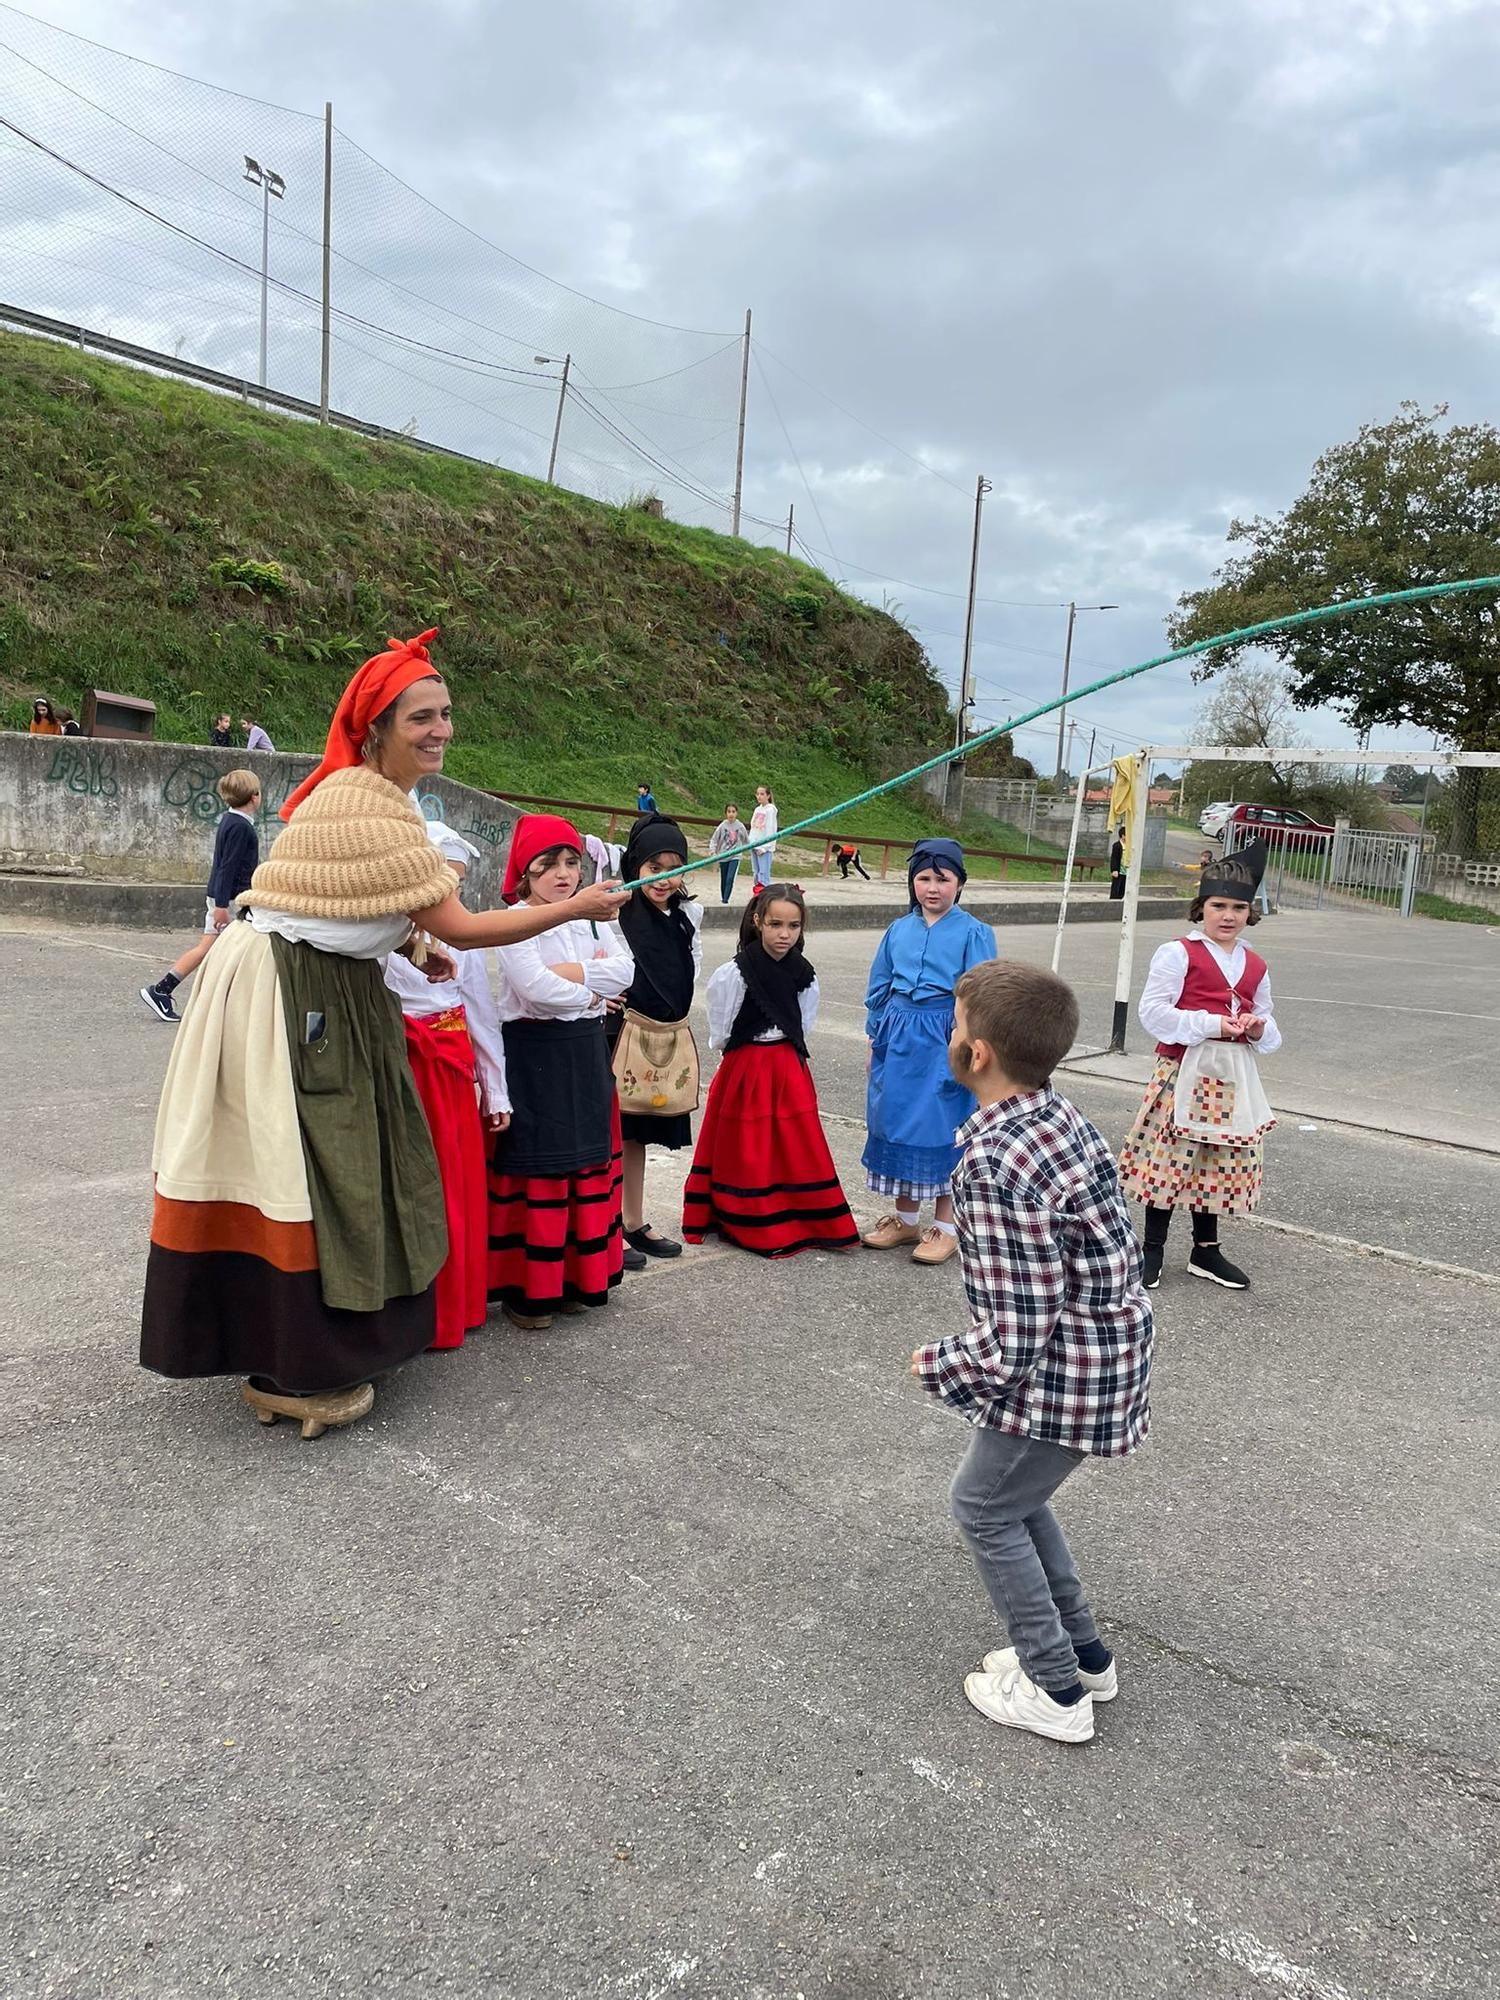 Los alumnos del colegio San Bartolomé de Nava celebran una semana llena de tradiciones